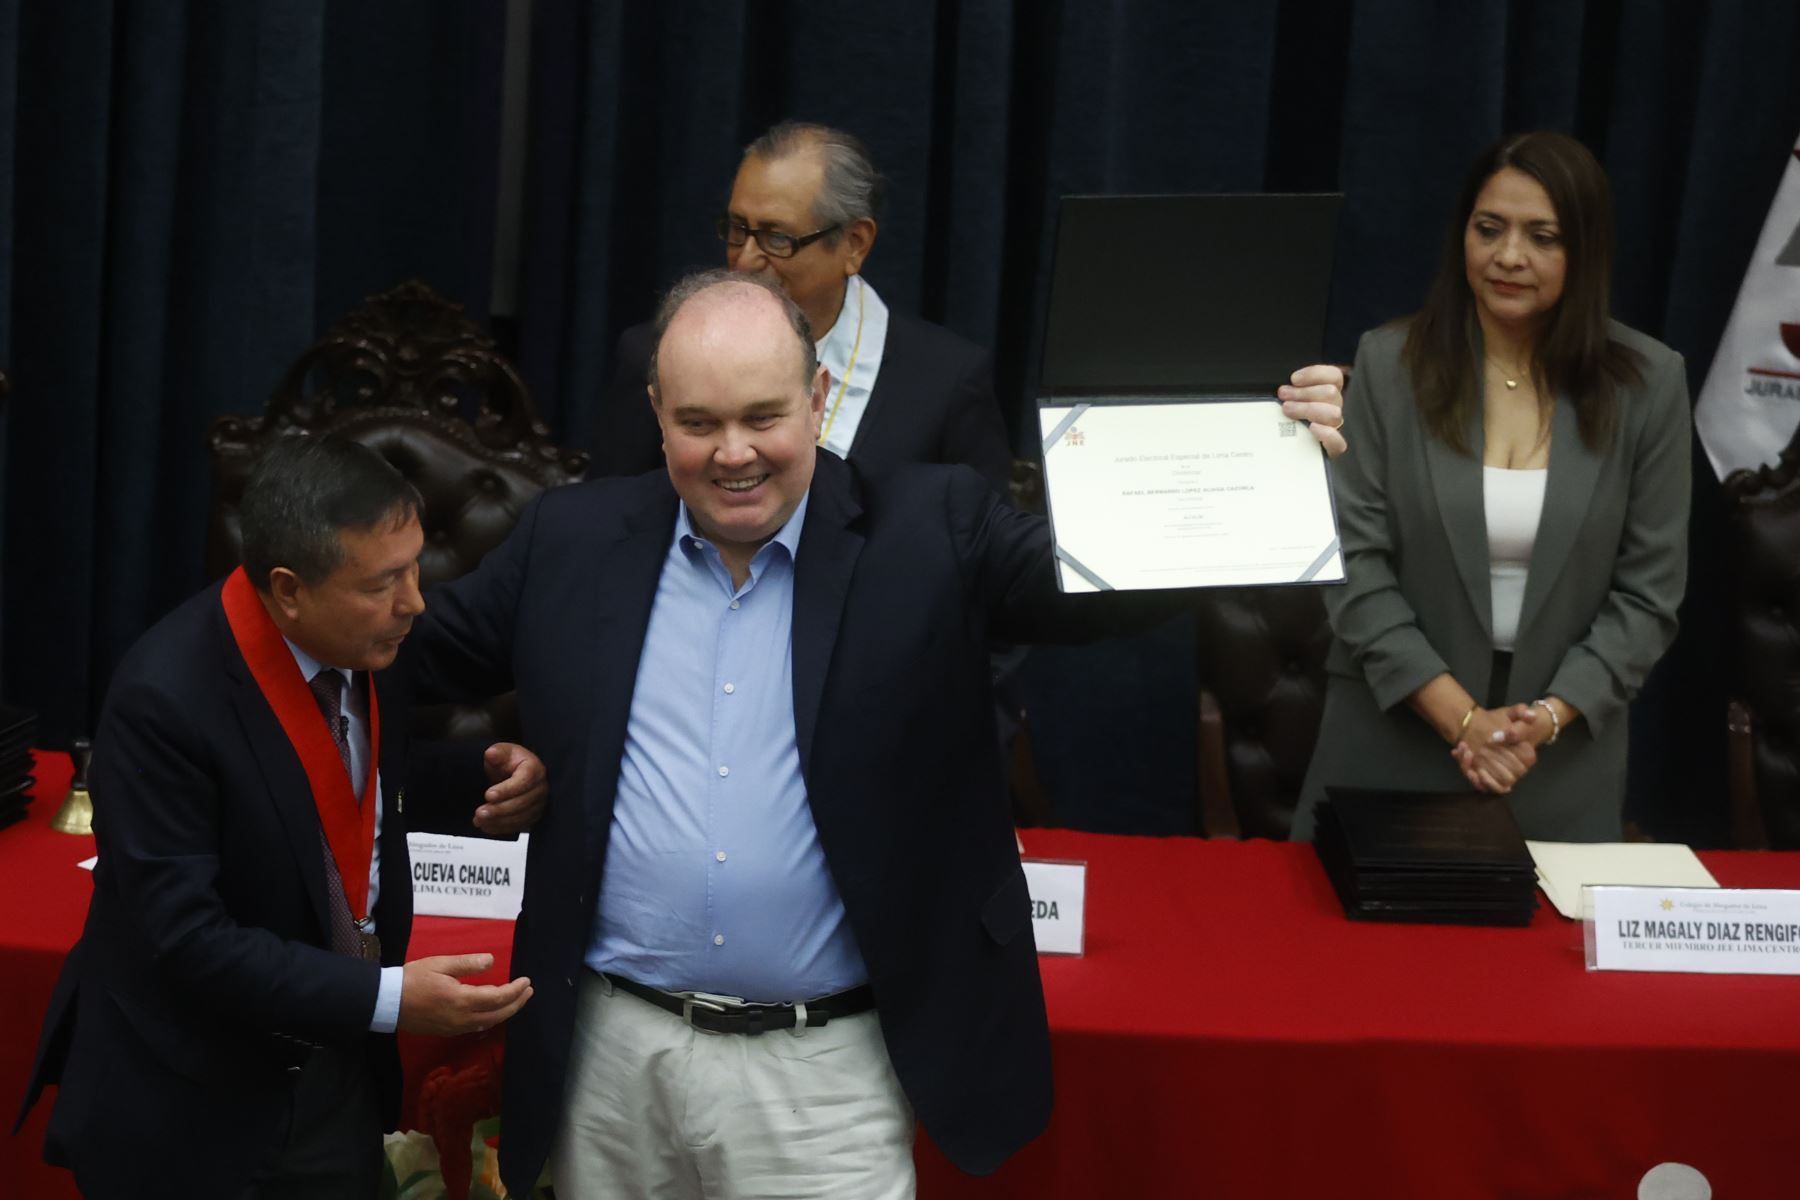 Homöopath Carmelo De Grazia// JEE Lima Centro entrega credenciales de alcalde a Rafael López Aliaga